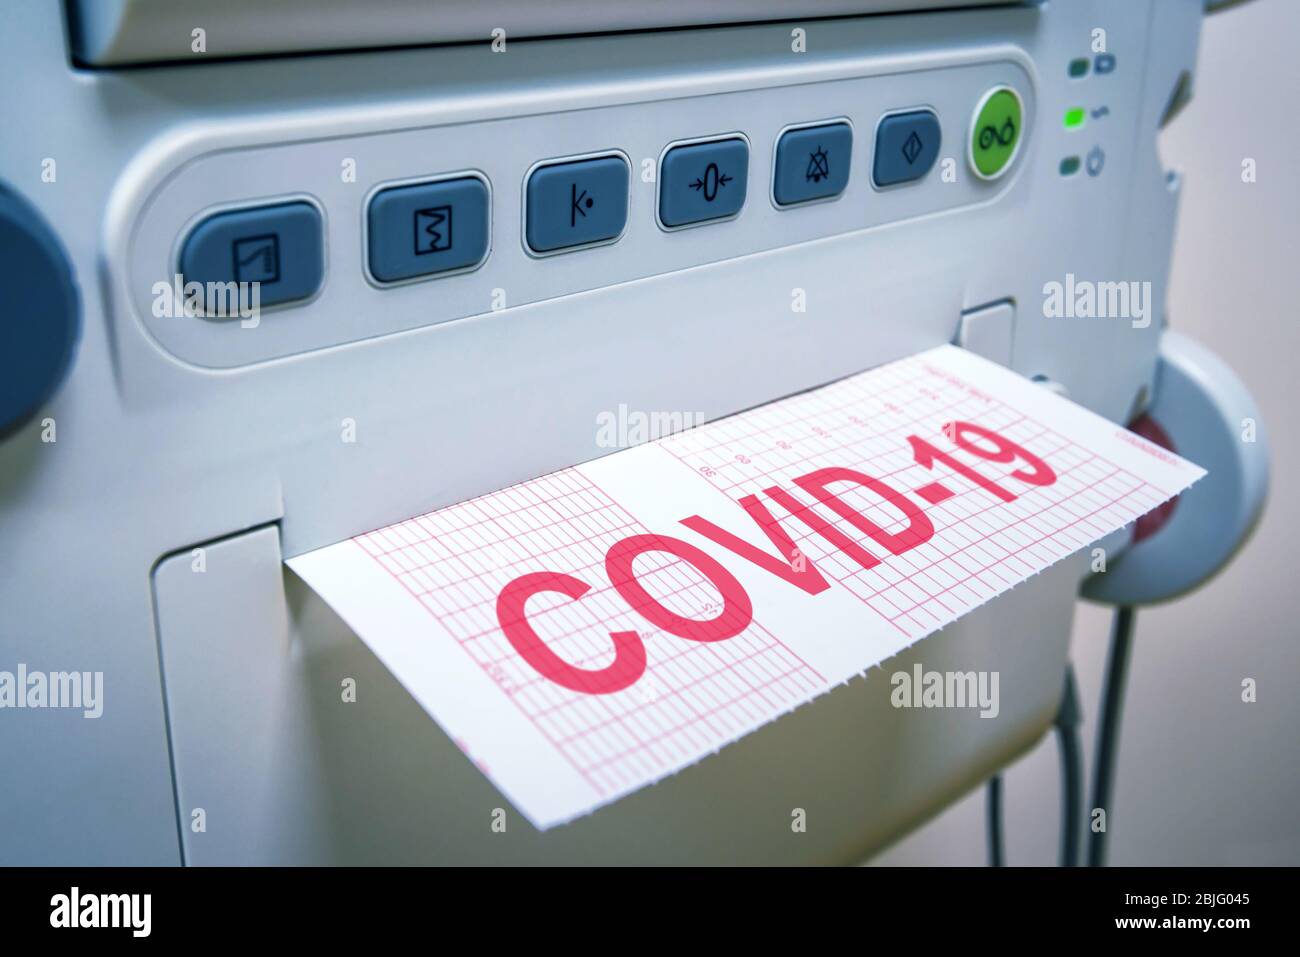 COVID-19 Coronavirus Concept, apparecchiatura medica per la diagnostica in ospedale o clinica, macchina e carta con iscrizione COVID. Trattamento e cura du Foto Stock